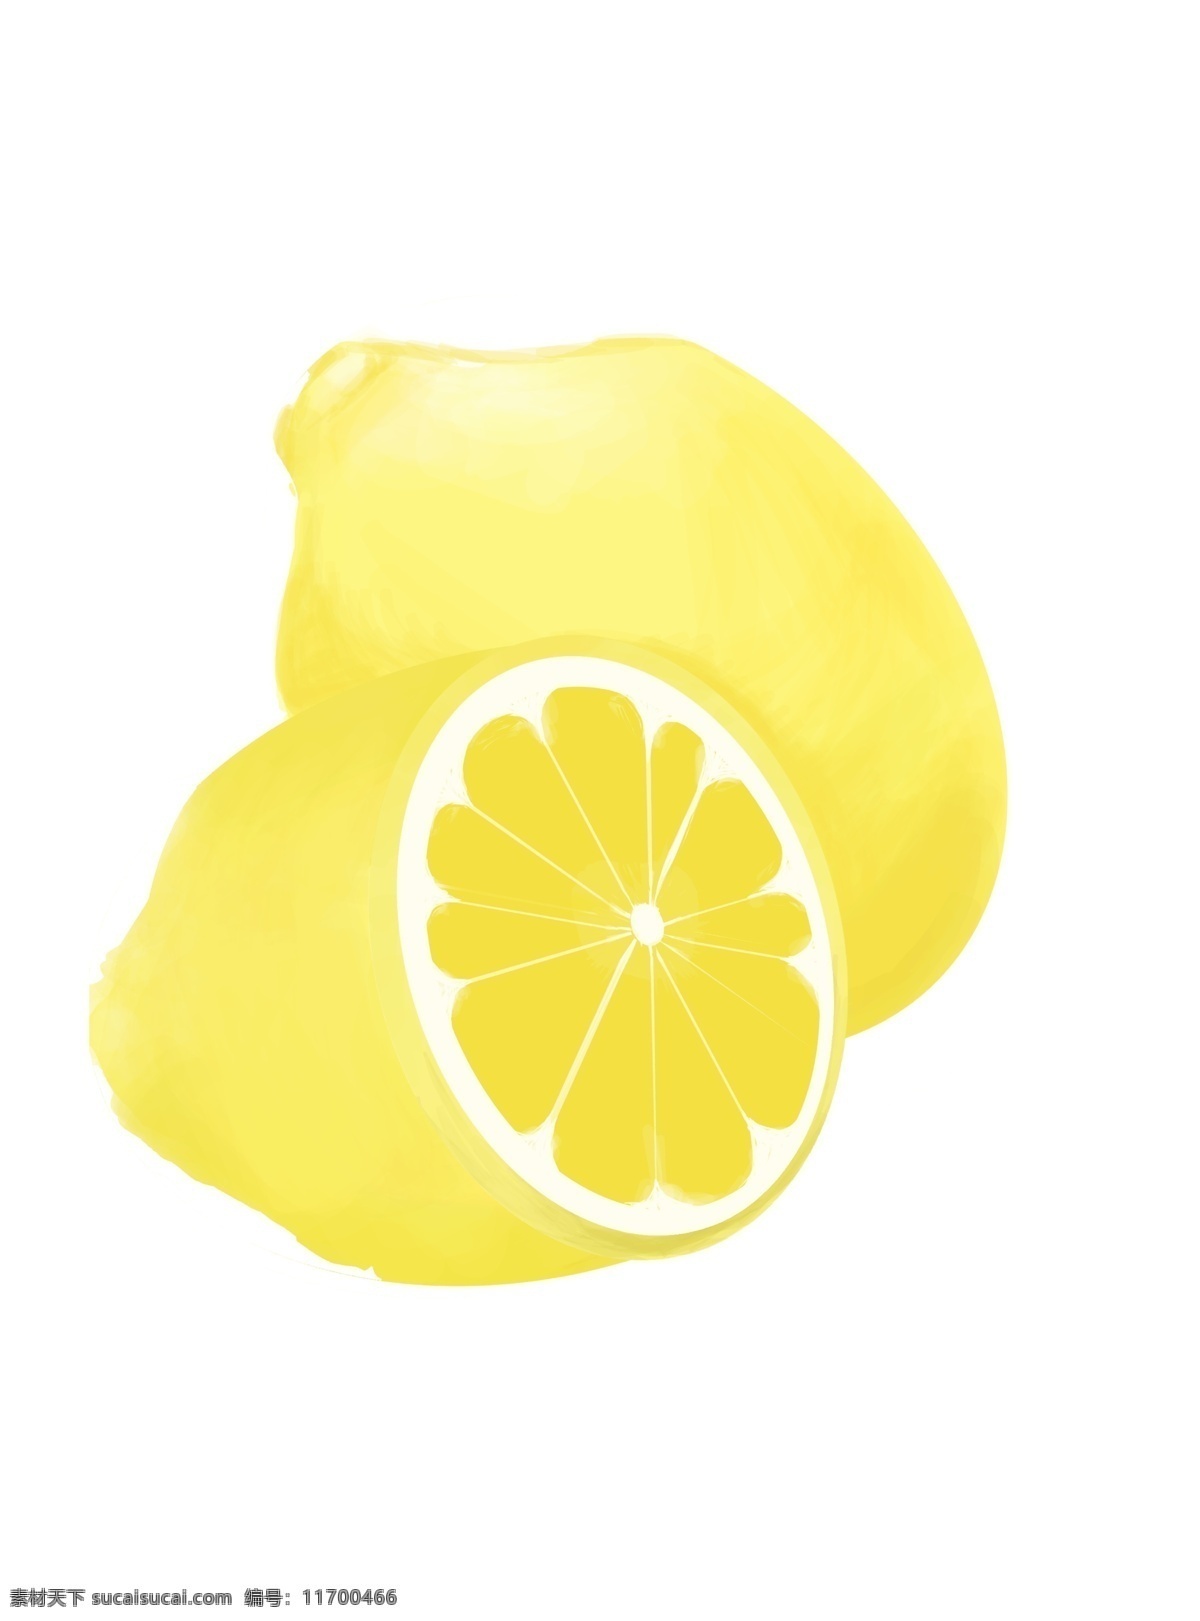 黄色柠檬水果 黄色柠檬 水果 柠檬